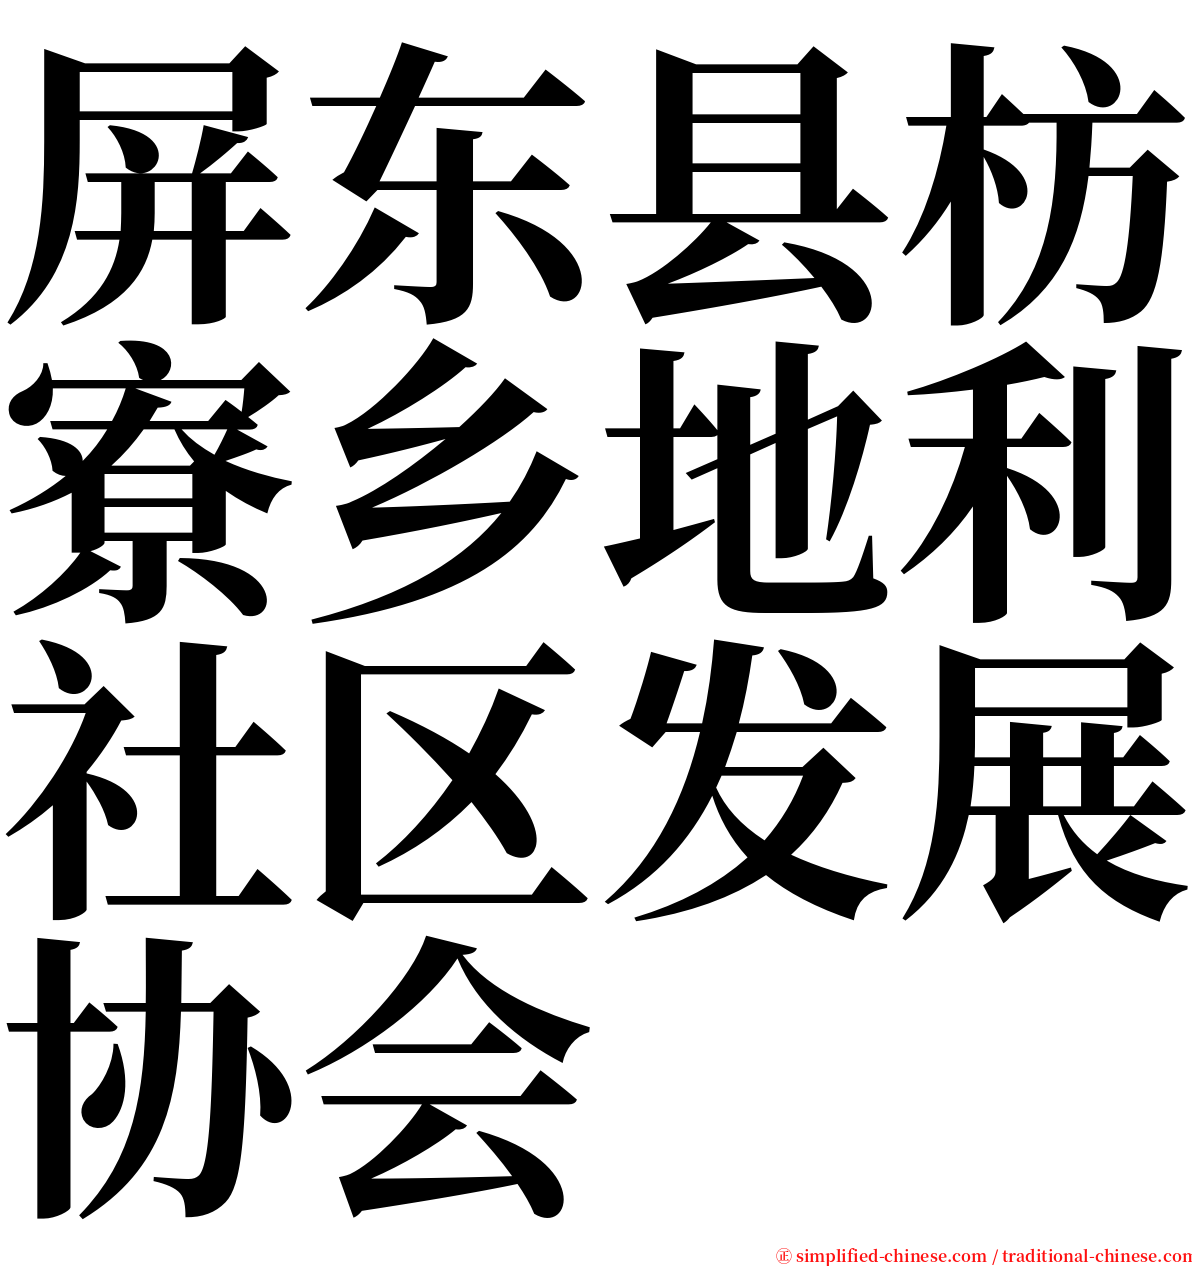 屏东县枋寮乡地利社区发展协会 serif font